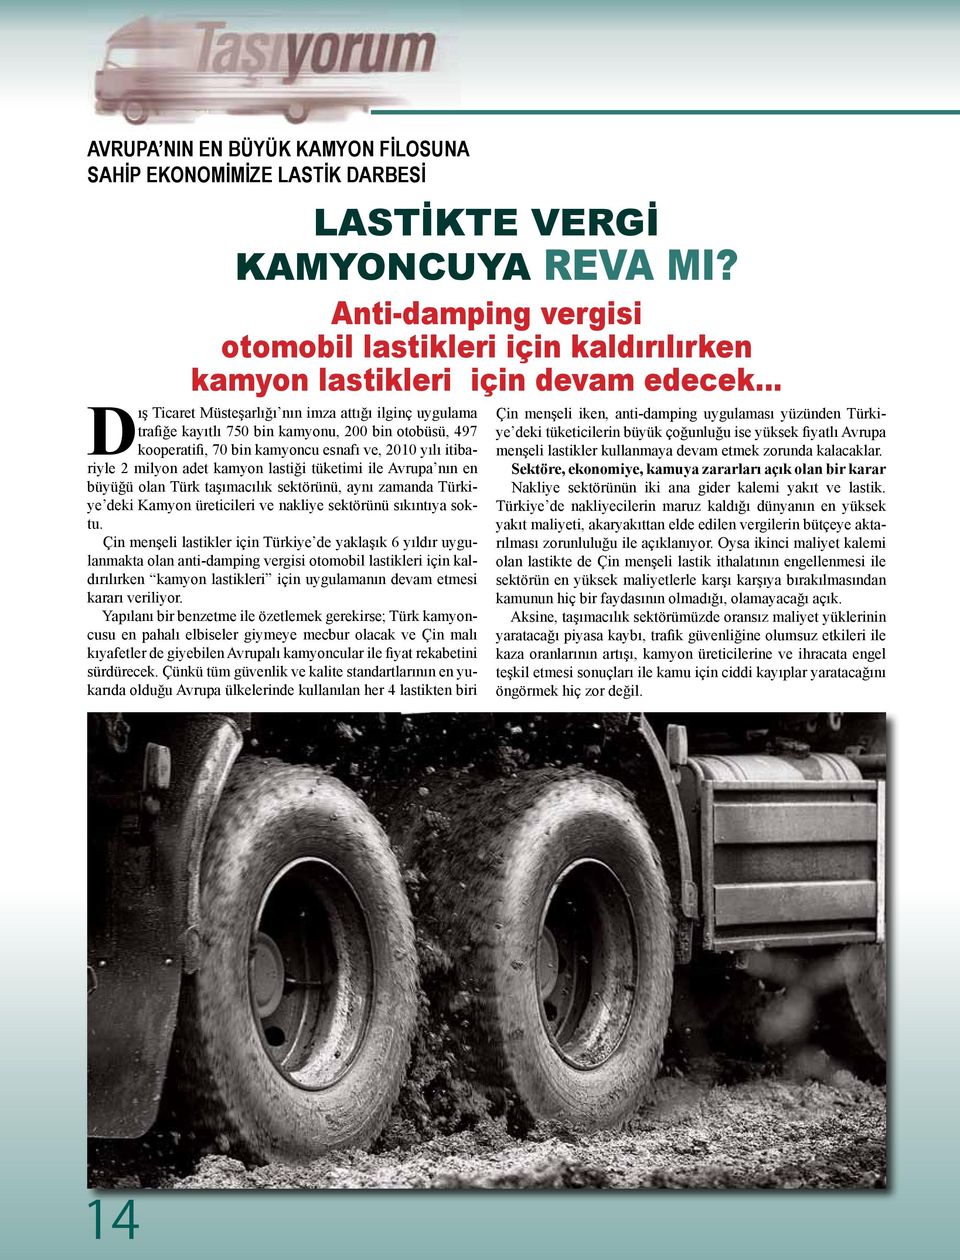 lastiği tüketimi ile Avrupa nın en büyüğü olan Türk taşımacılık sektörünü, aynı zamanda Türkiye deki Kamyon üreticileri ve nakliye sektörünü sıkıntıya soktu.